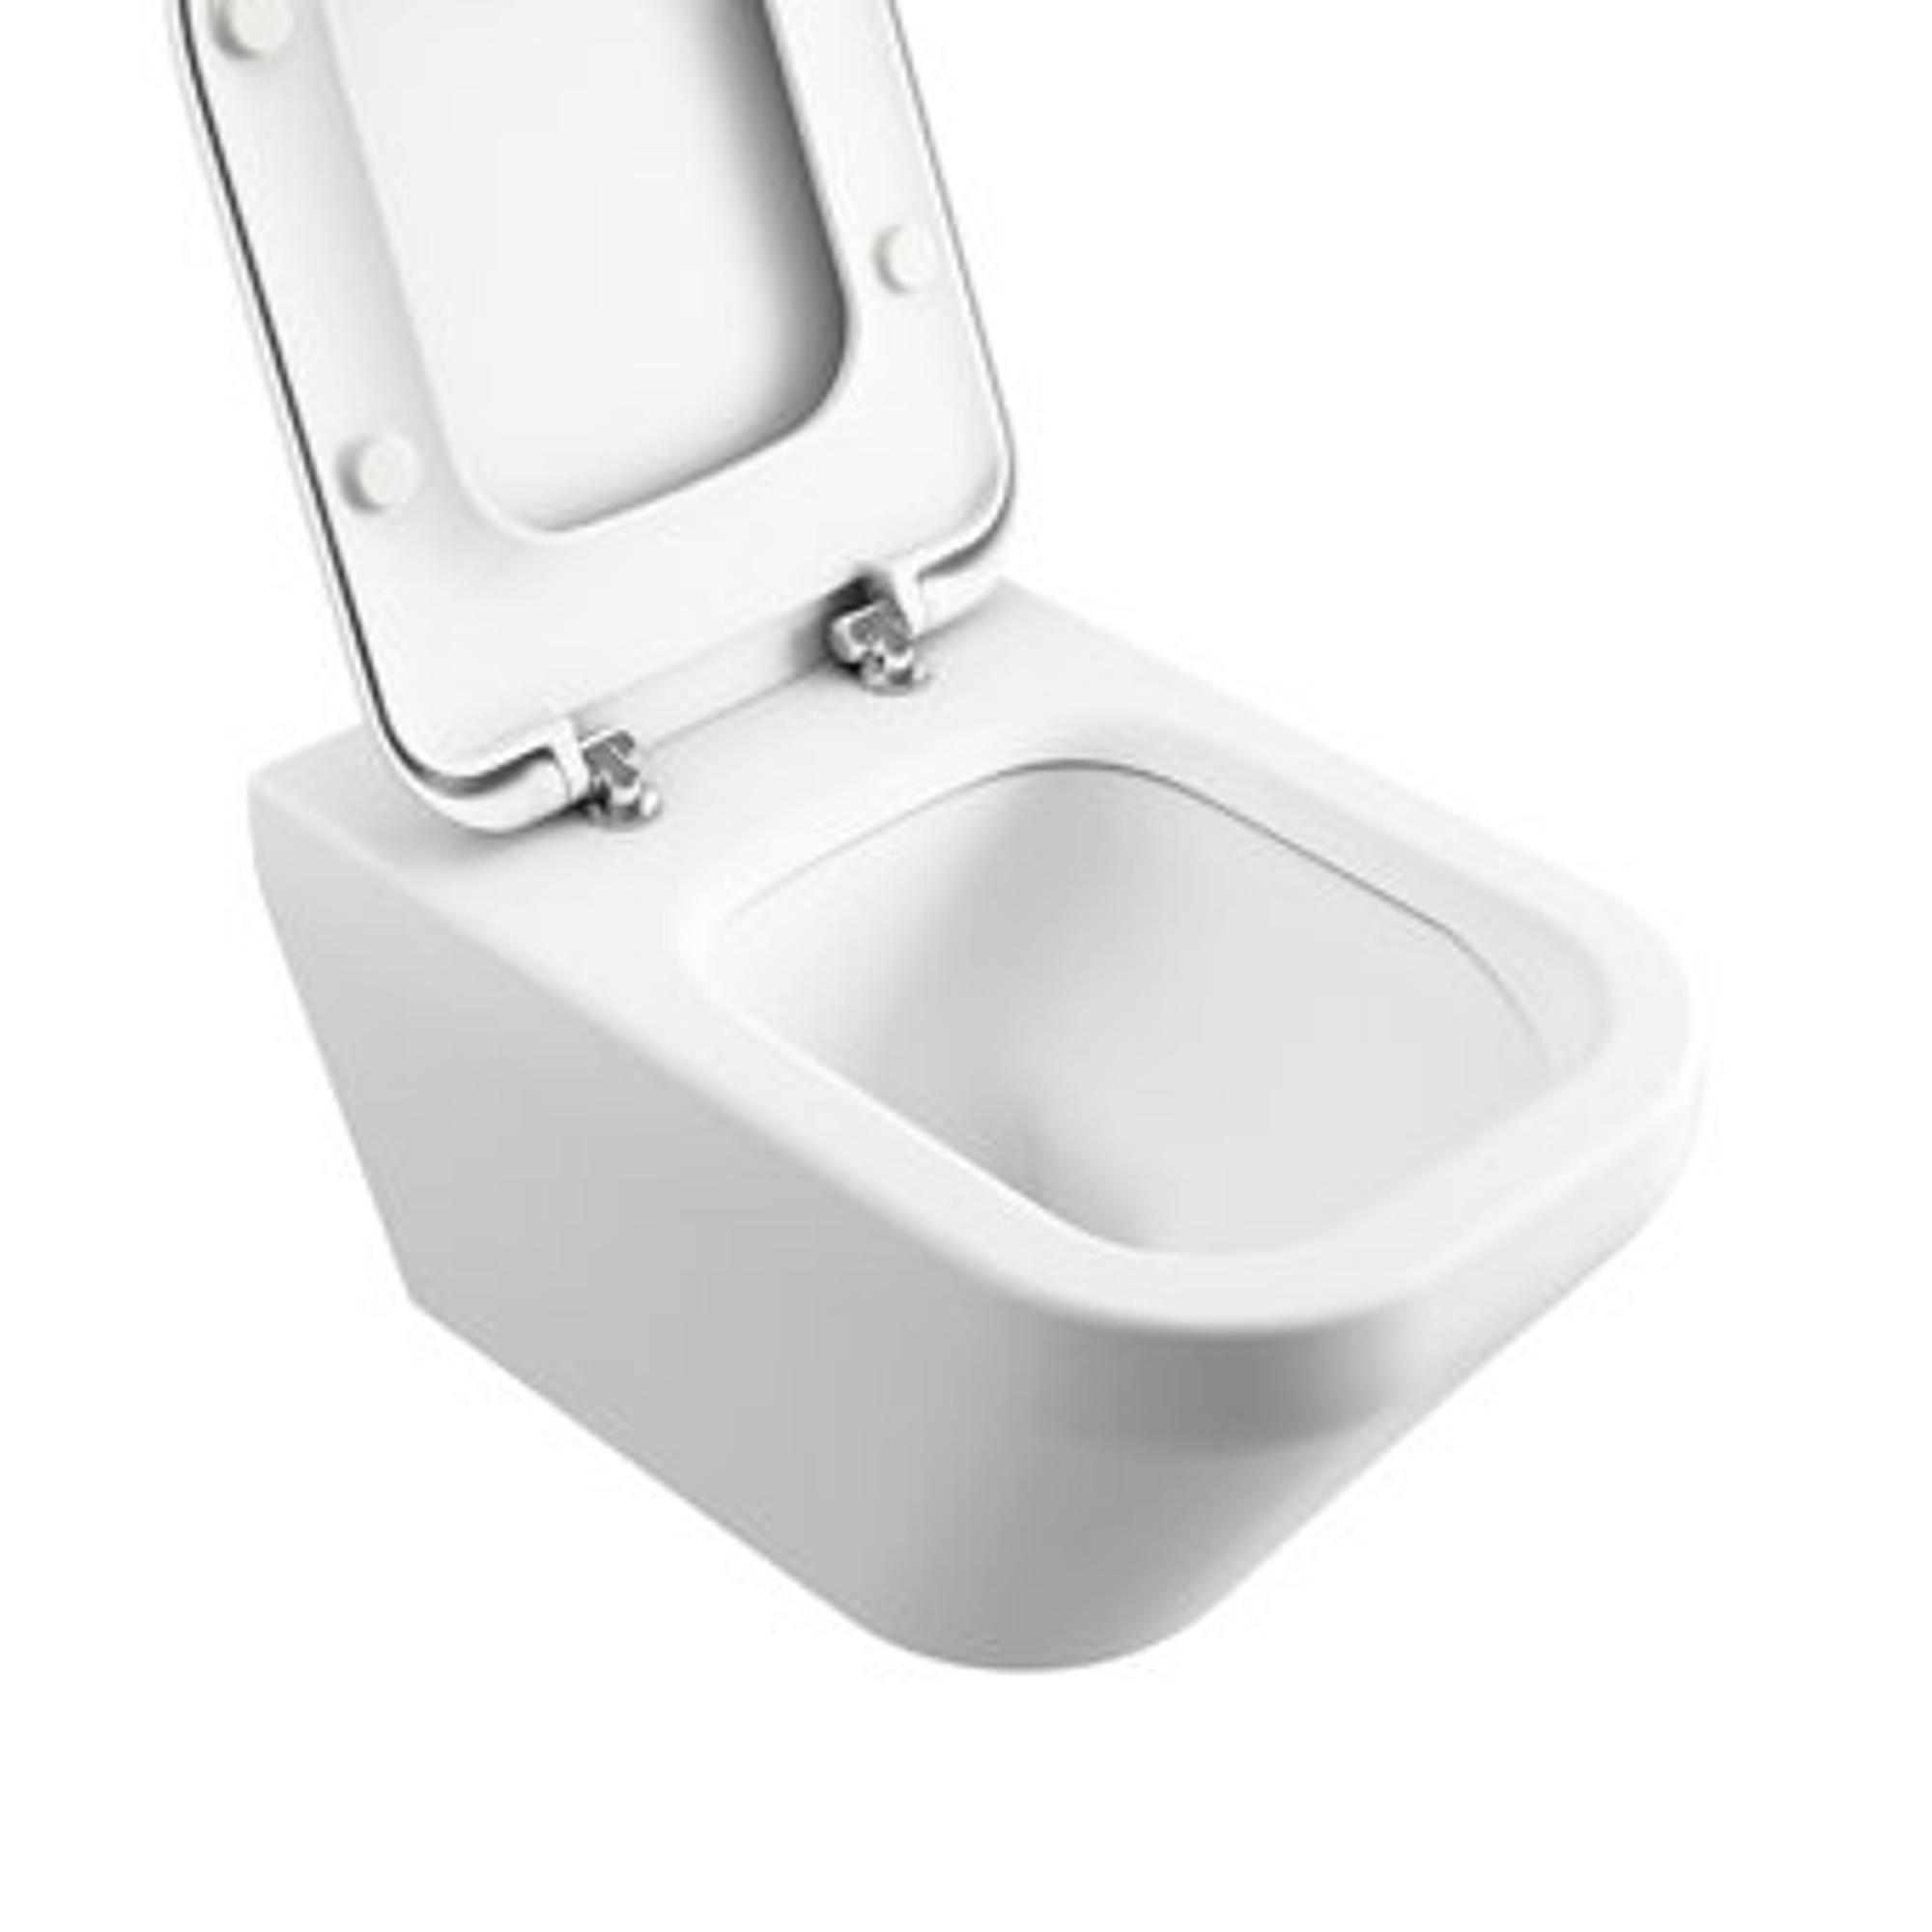 WC suspendu rectangulaire en céramique blanche - Kube